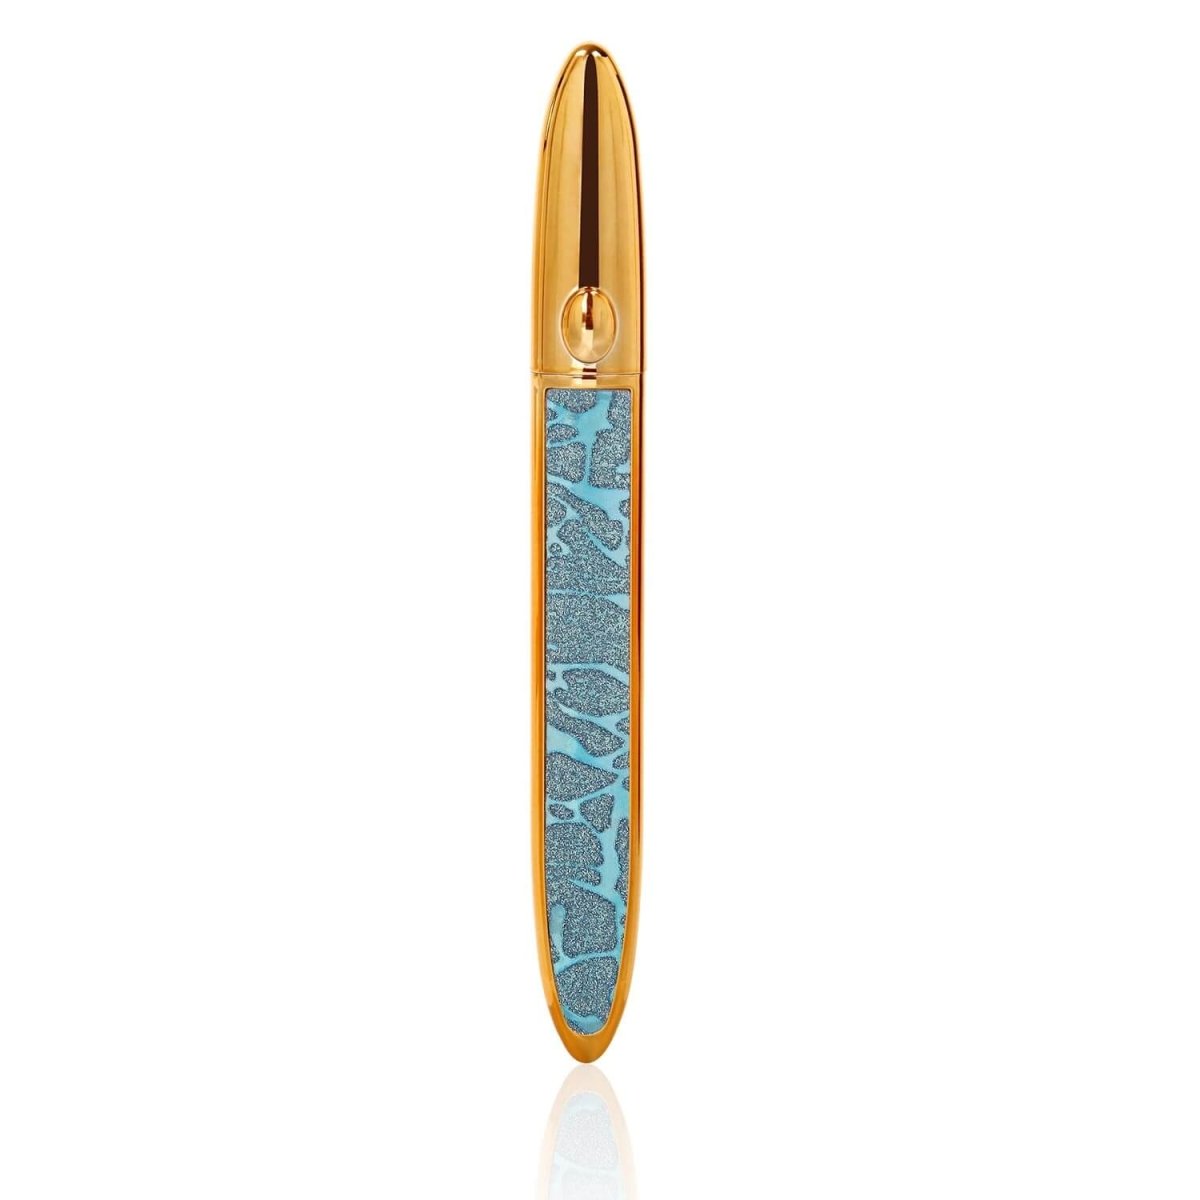 Waterproof Magnetic Eyeliner Pen - PlanetShopper